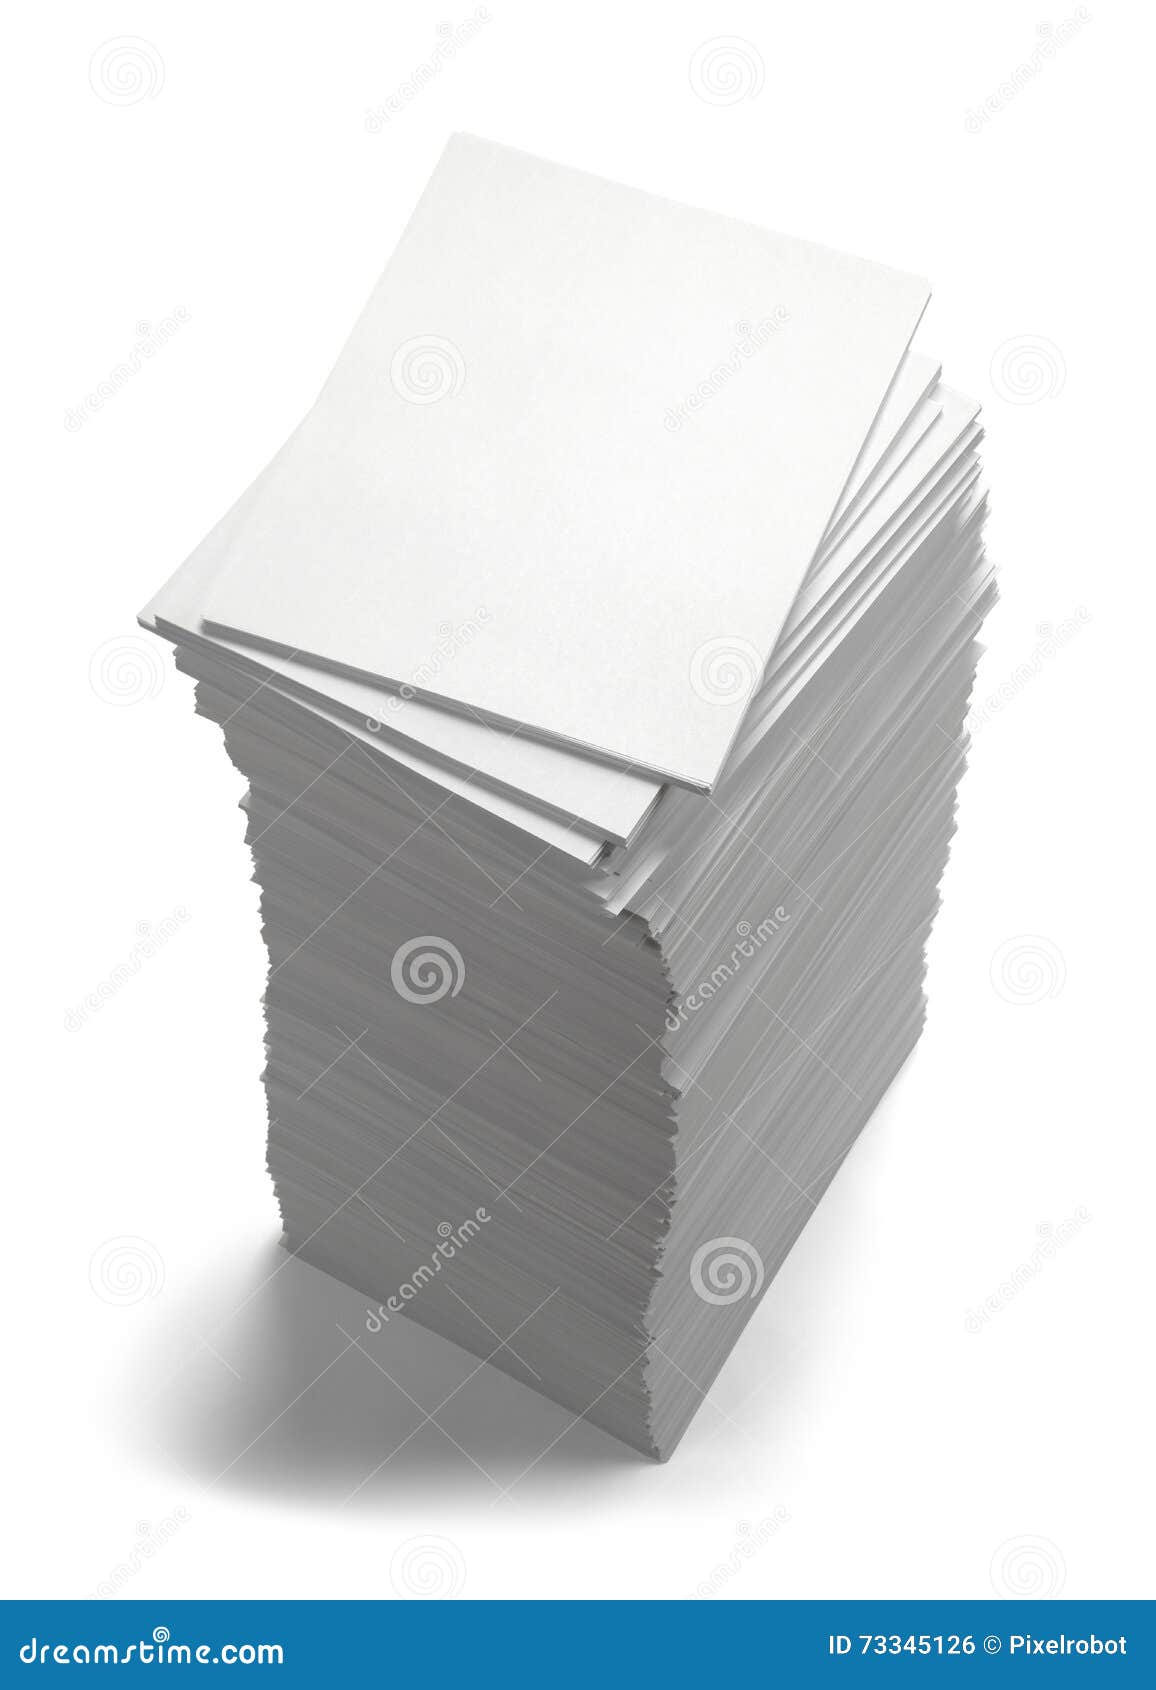 Une Grosse Pile De Piles De Papier De Vieux Papiers Photo stock - Image du  pièce, pile: 196473466